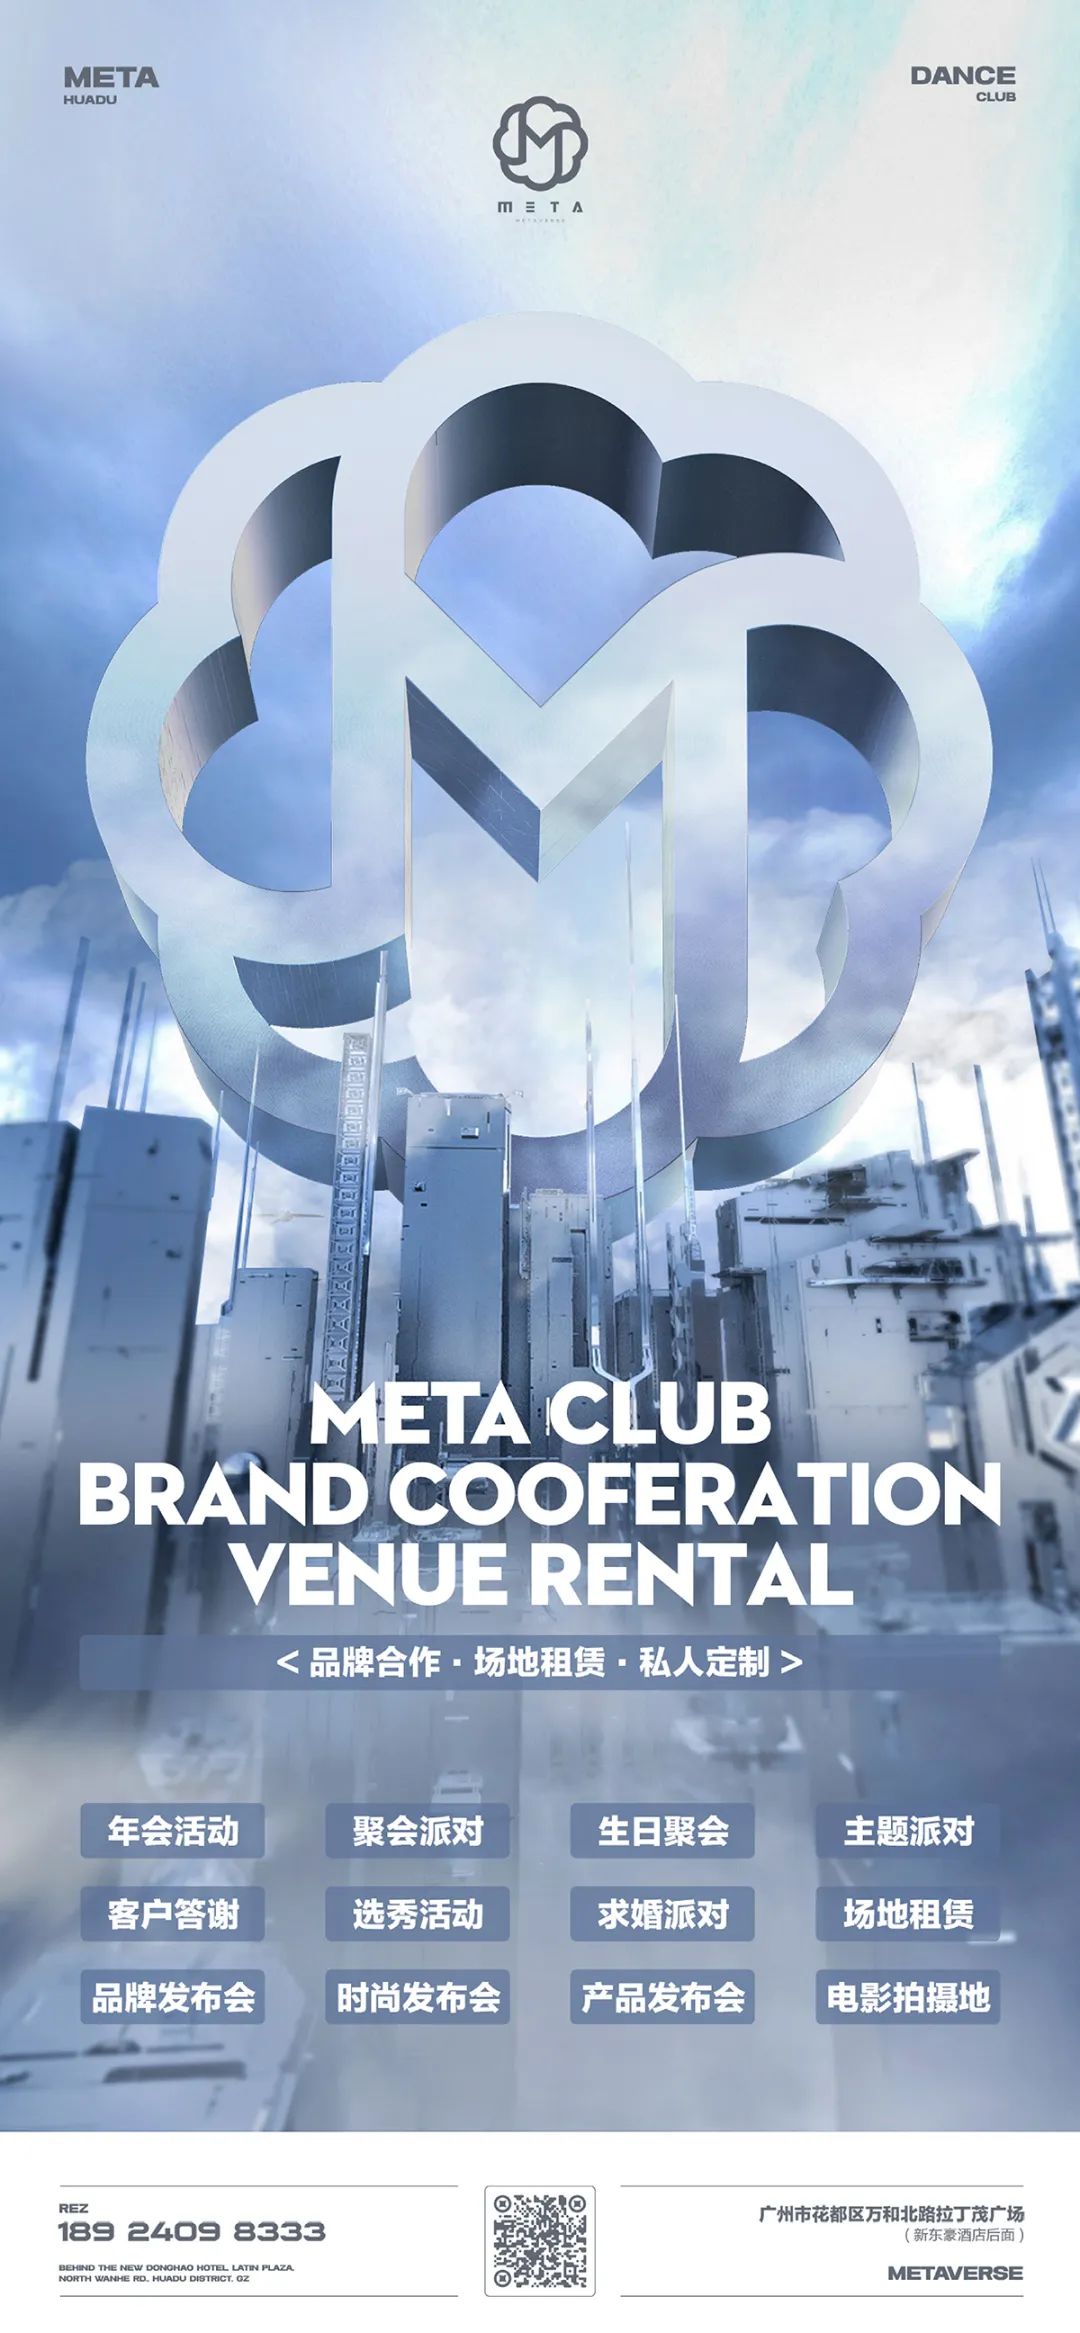 META CLUB ▏品牌合作 · 场地租赁 · 私人定制，您想要的META都有-广州META酒吧/META CLUB